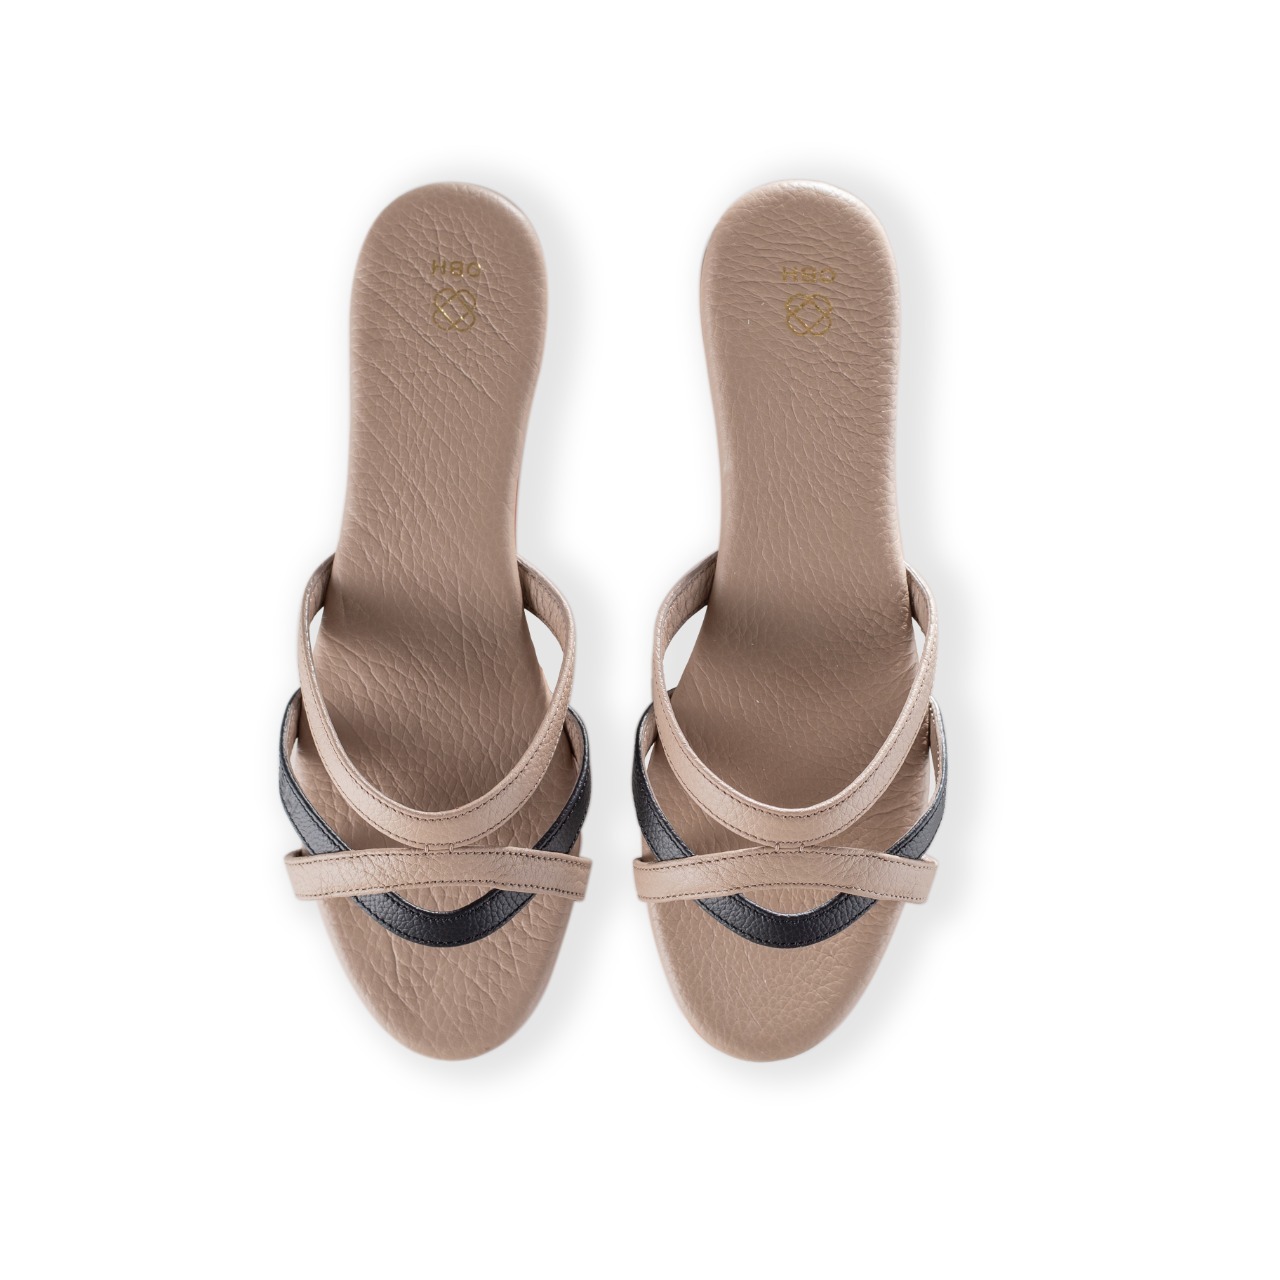 Buy OBH Ladies Sandal 2 Model Black/Beige Color Online in UAE | OBH ...